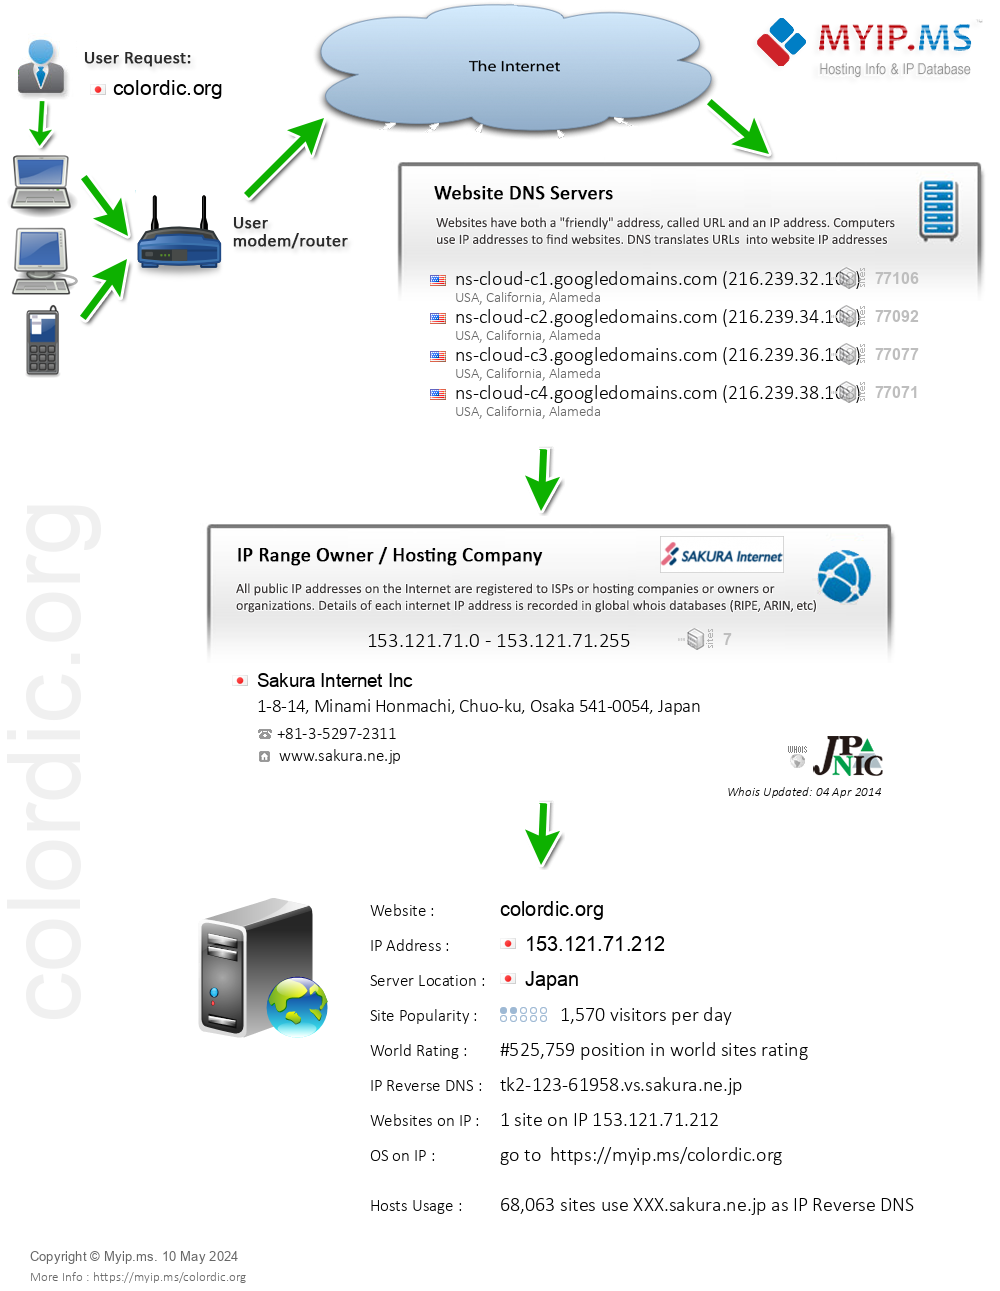 Colordic.org - Website Hosting Visual IP Diagram